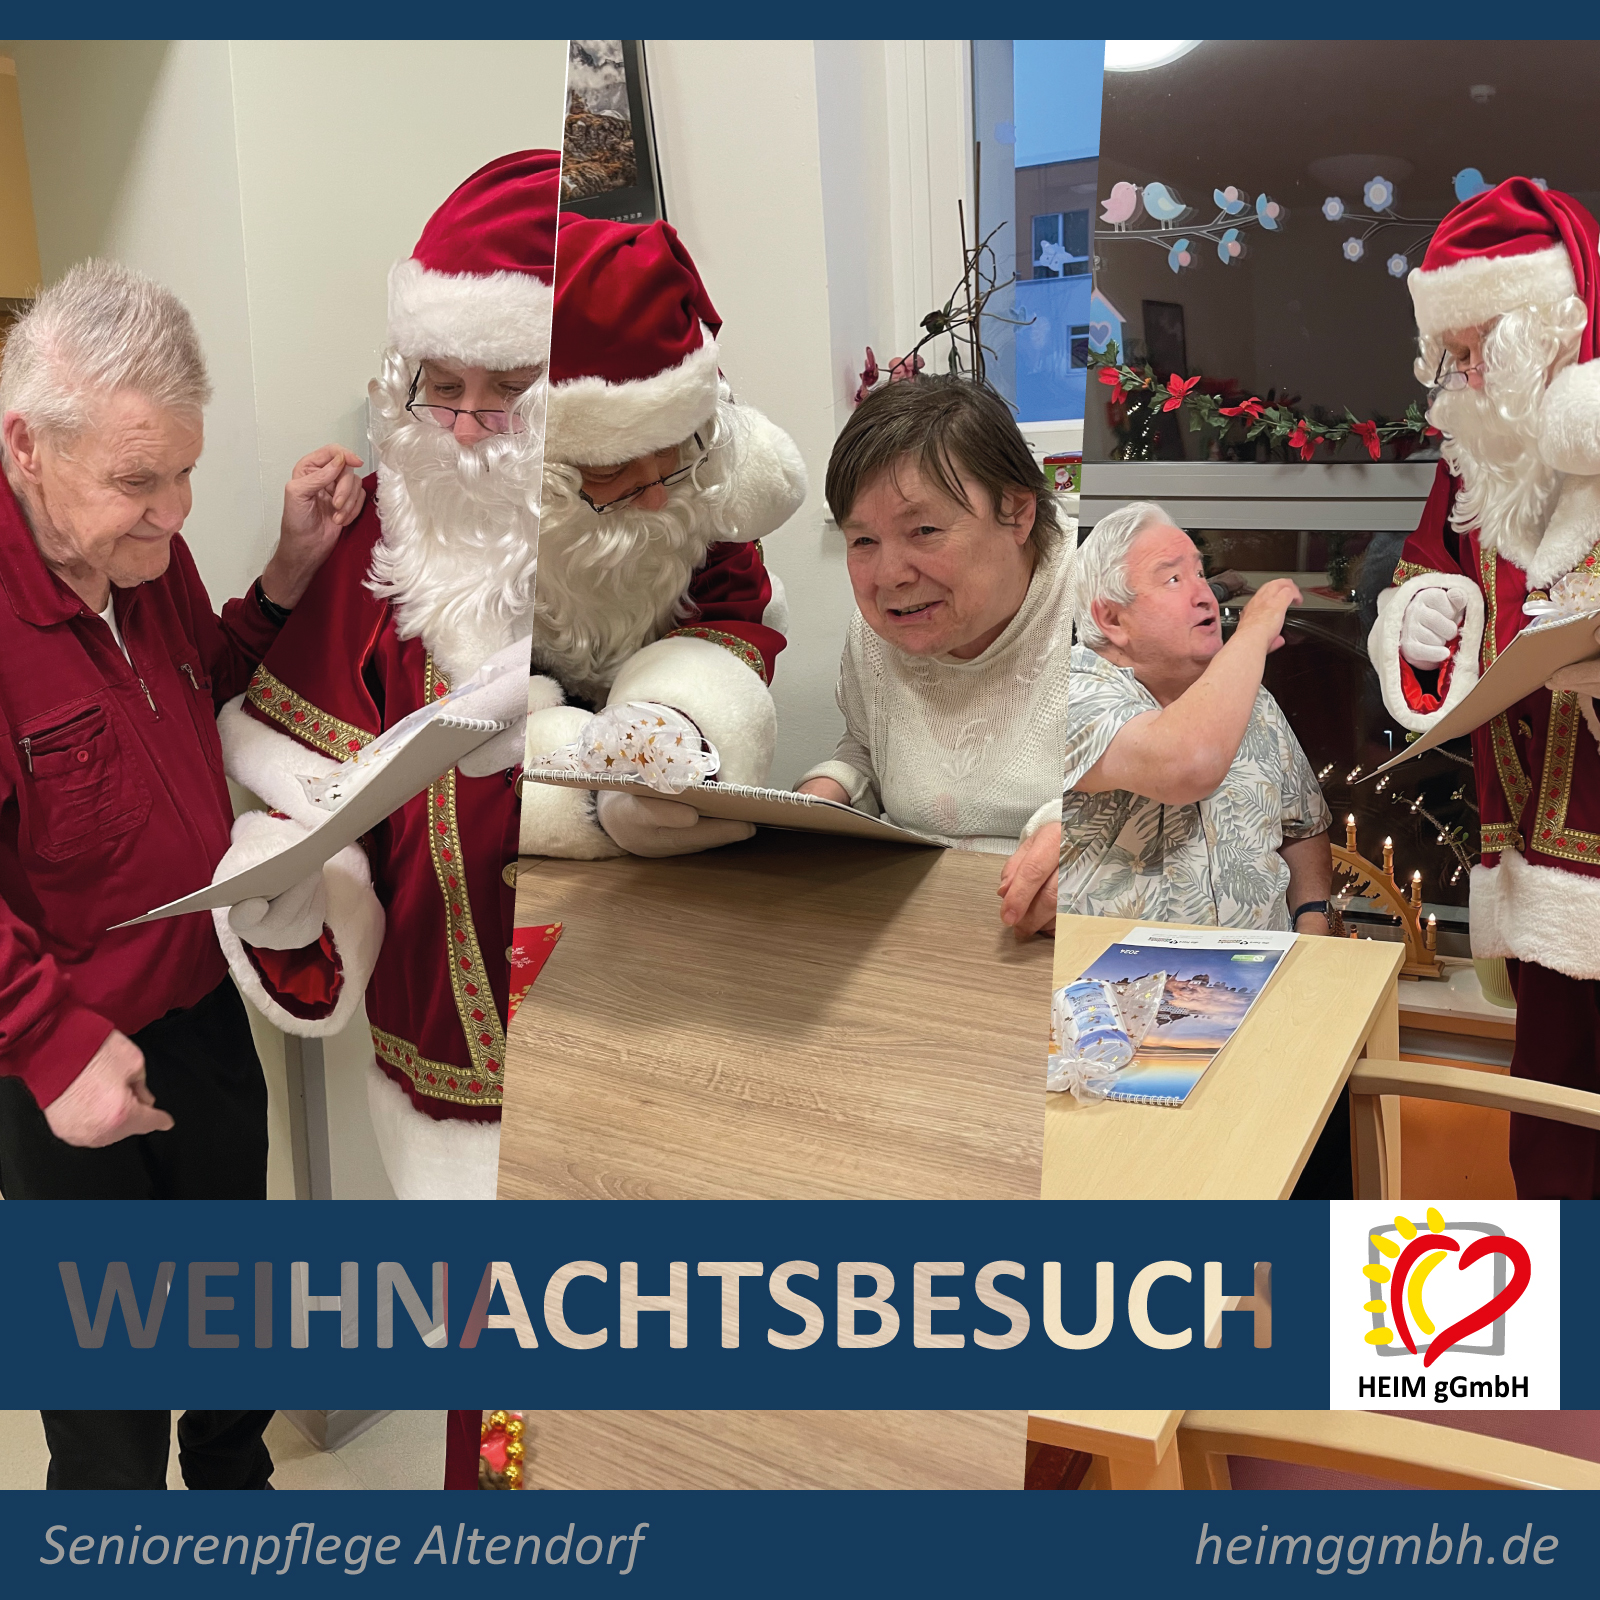 Der Weihnachtsmann war zu Gast in der Seniorenpflege Chemnitz Altendorf der HEIM gemeinnützigen GmbH und verteilte vor Ort Geschenke